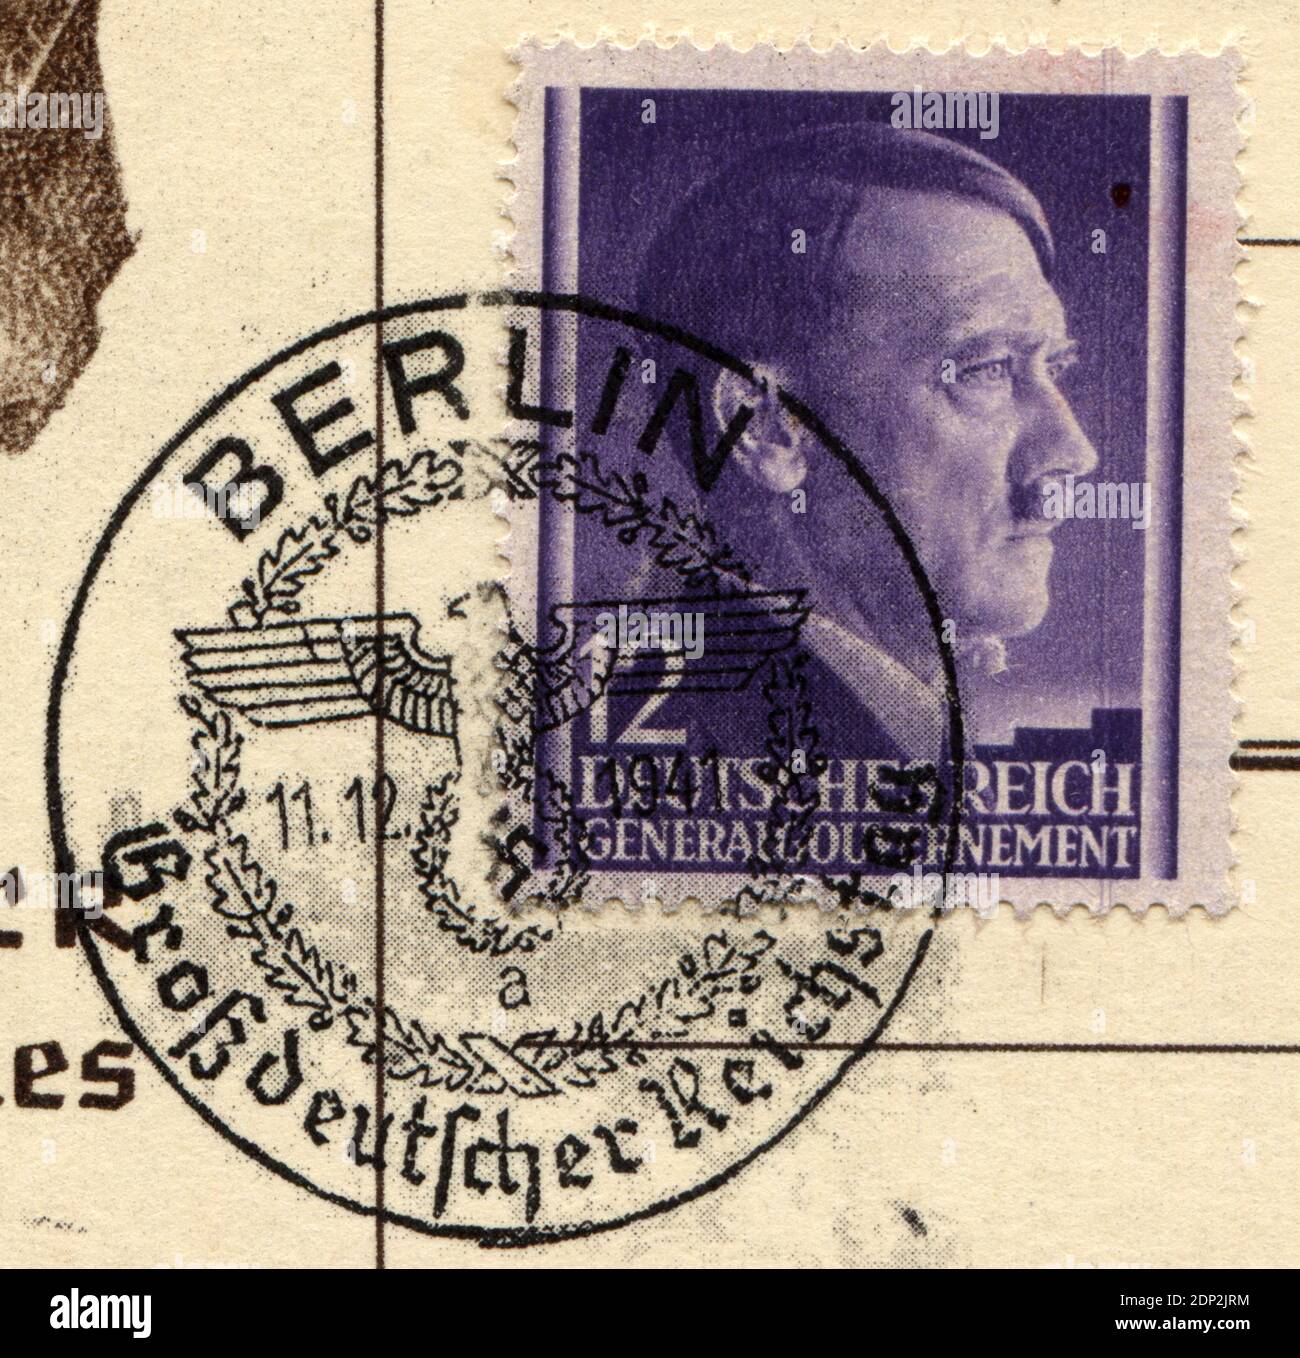 ALLEMAGNE - VERS 1941: Timbre-poste imprimé en Allemagne (Gouvernement général, Pologne), a montré le portrait d'Adolf Hitler - un homme politique allemand, chef (Fuehrer) de l'Allemagne et du Parti nazi, vers 1941 Banque D'Images